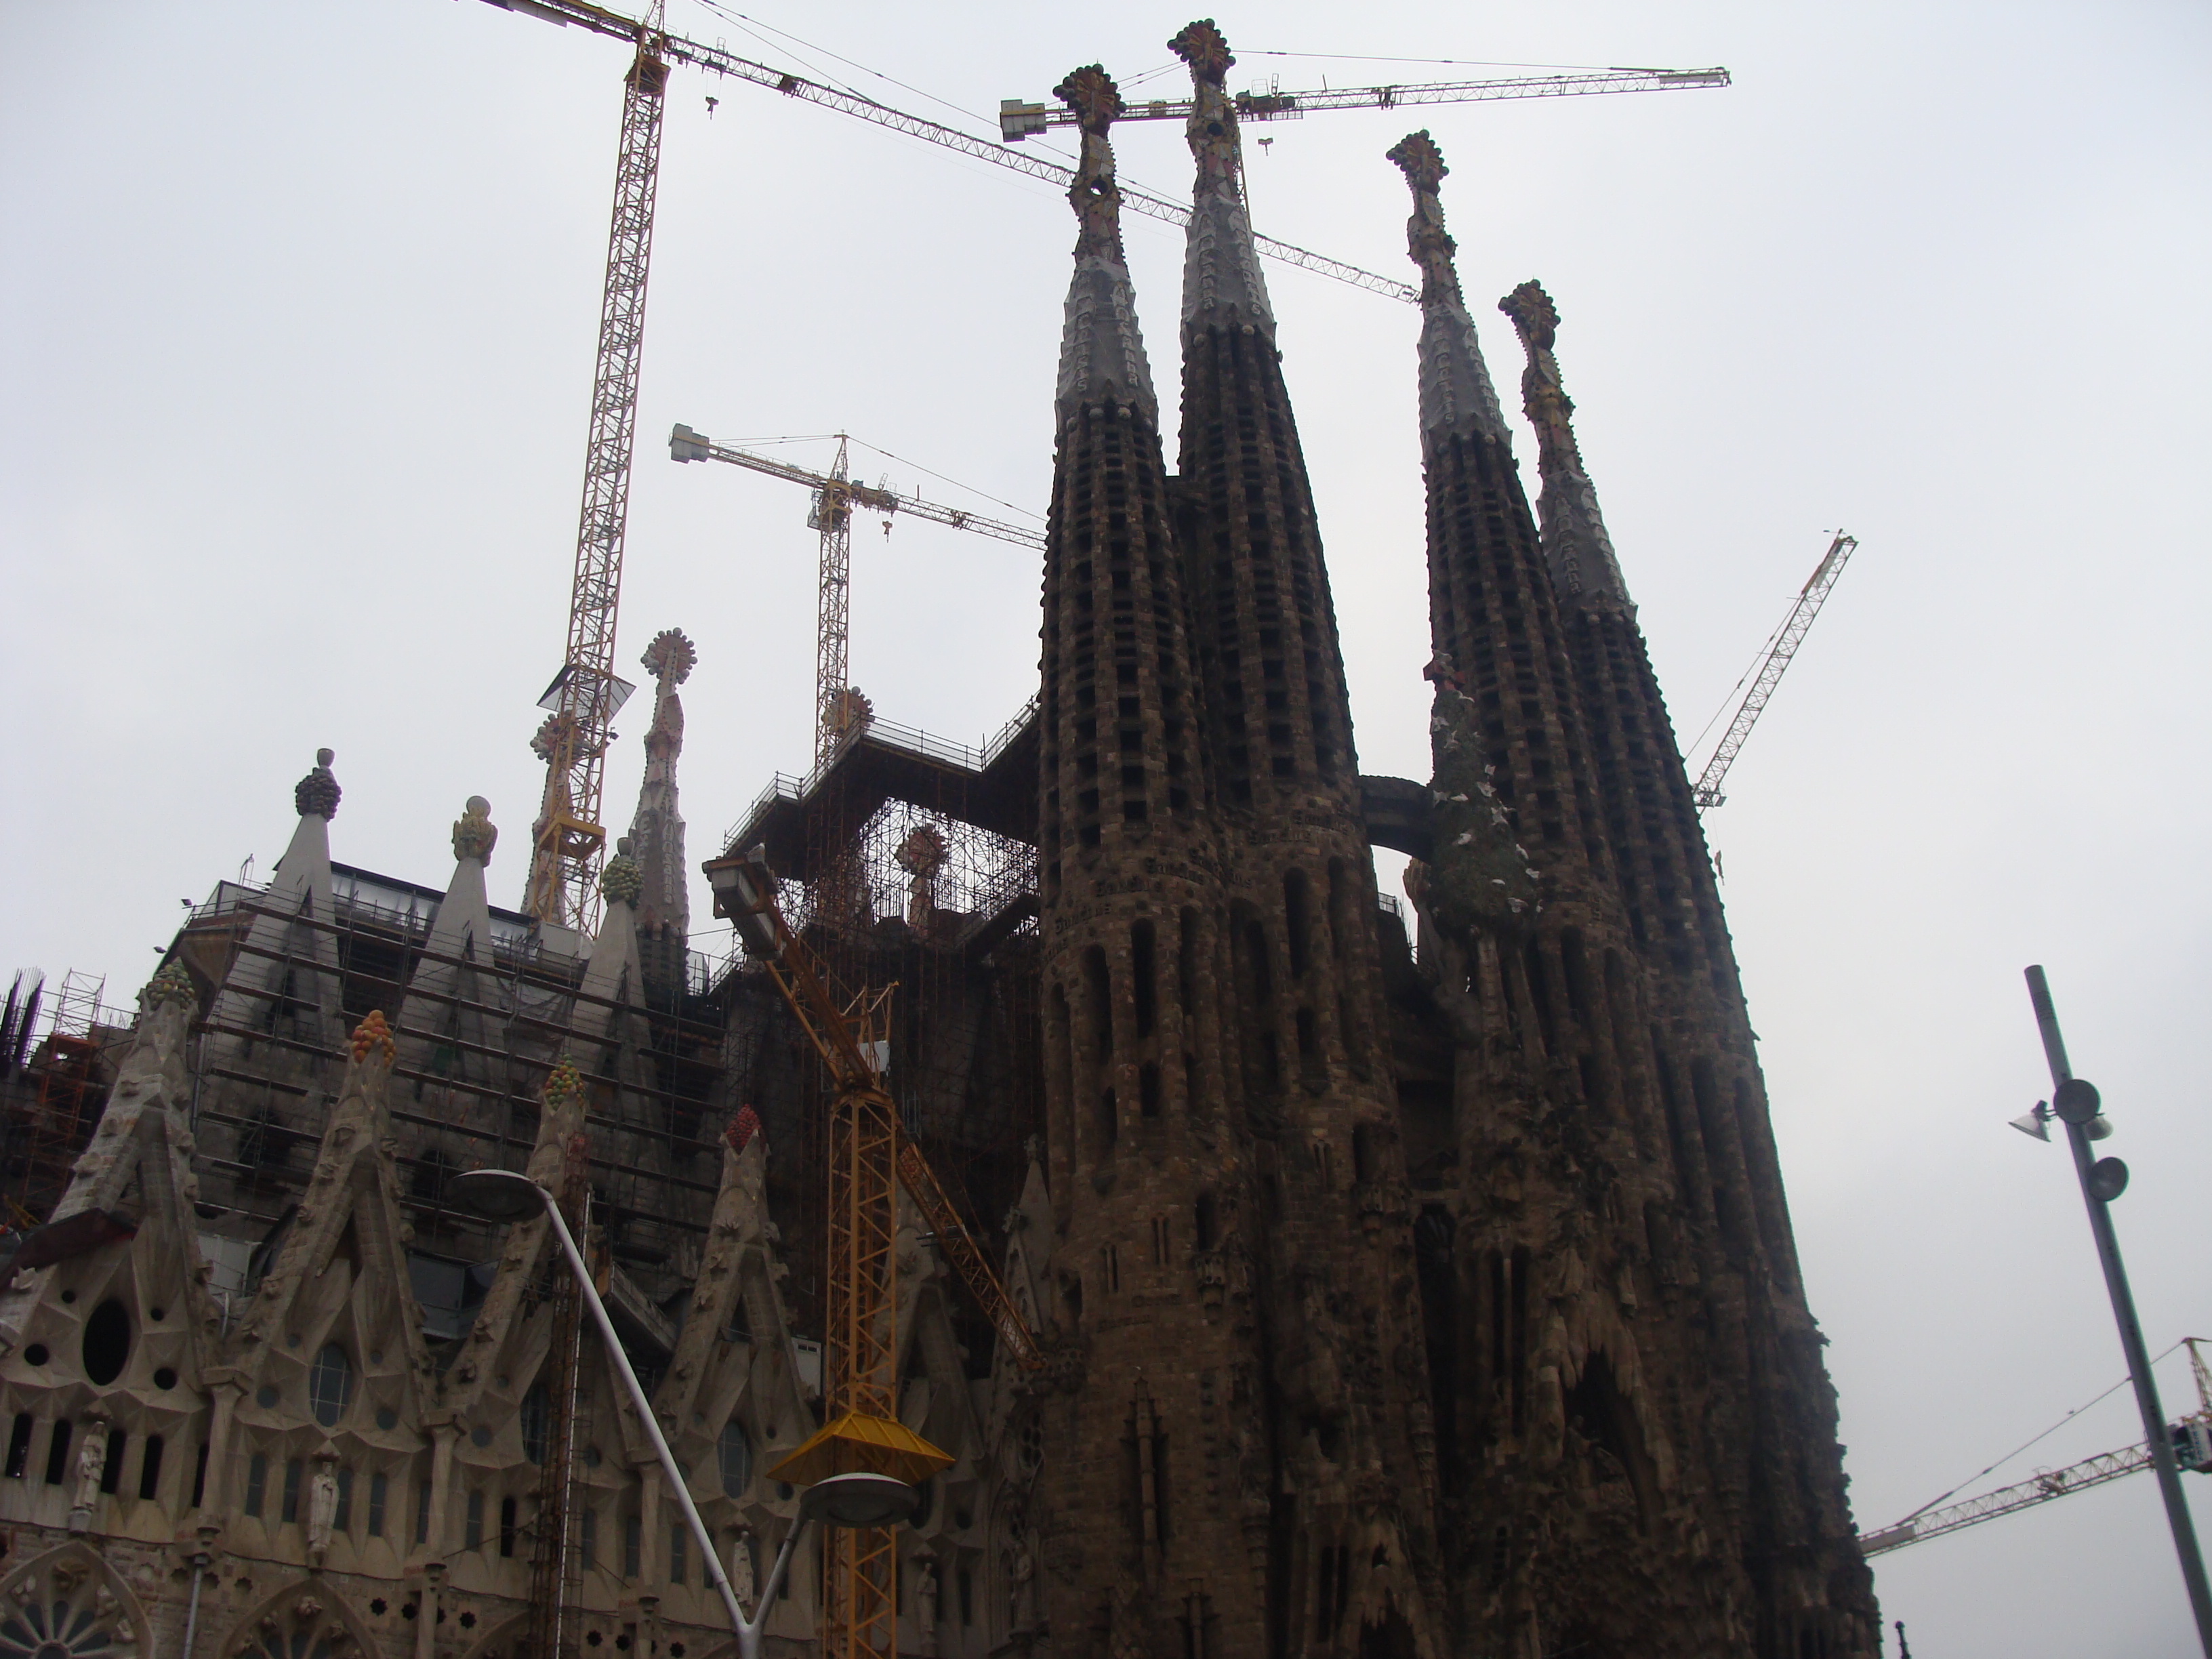 La Sagrada Familia, Barcelona, Spain